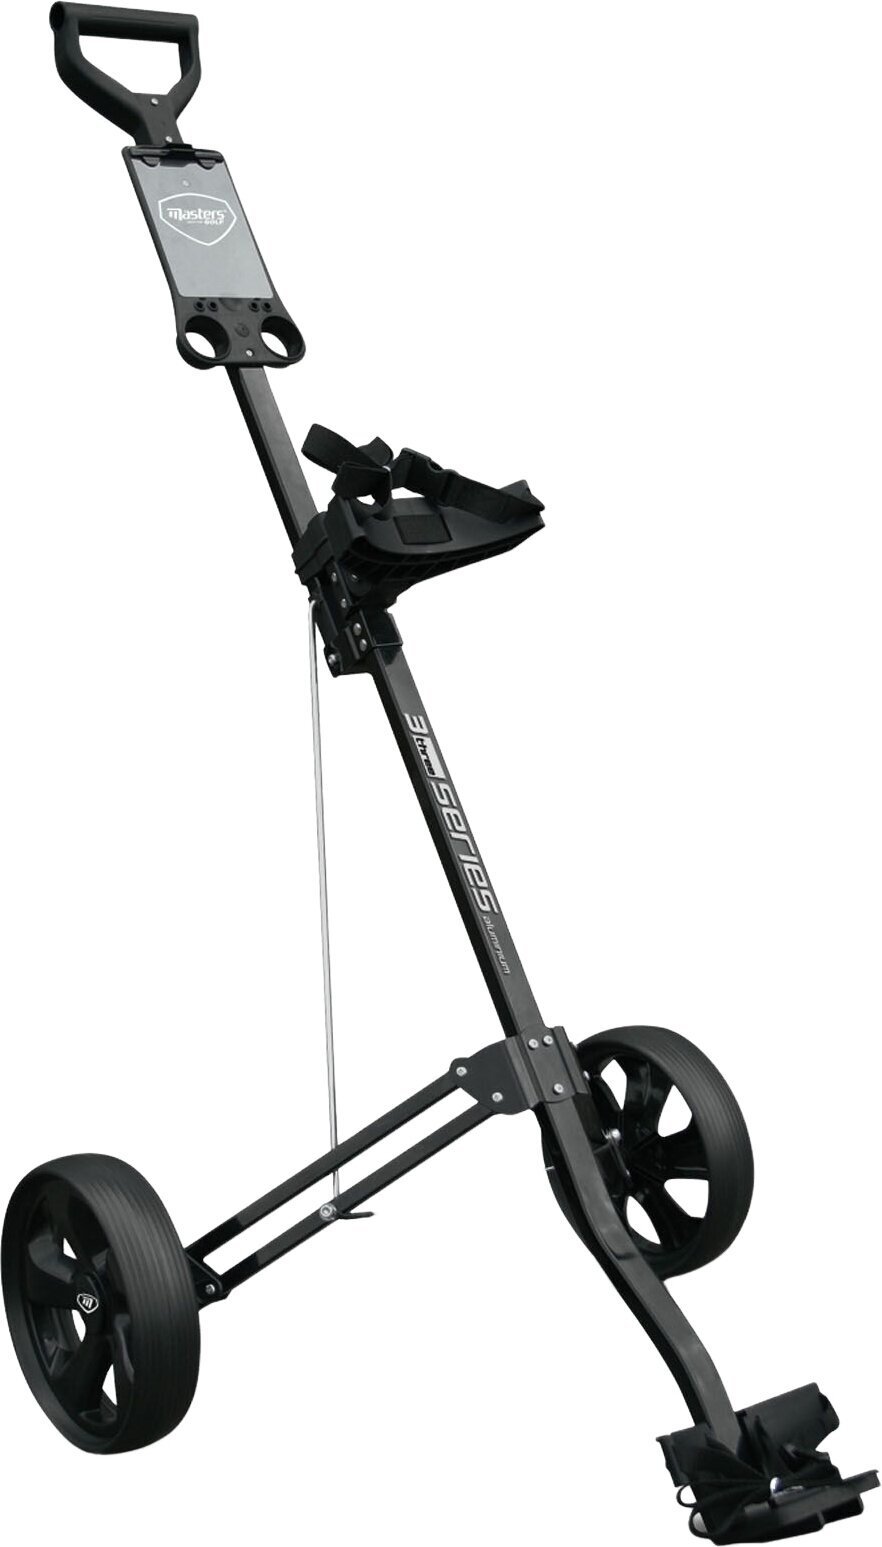 Wózek golfowy ręczny Masters Golf 3 Series Aluminium 2 Wheel Pull Trolley Black Wózek golfowy ręczny